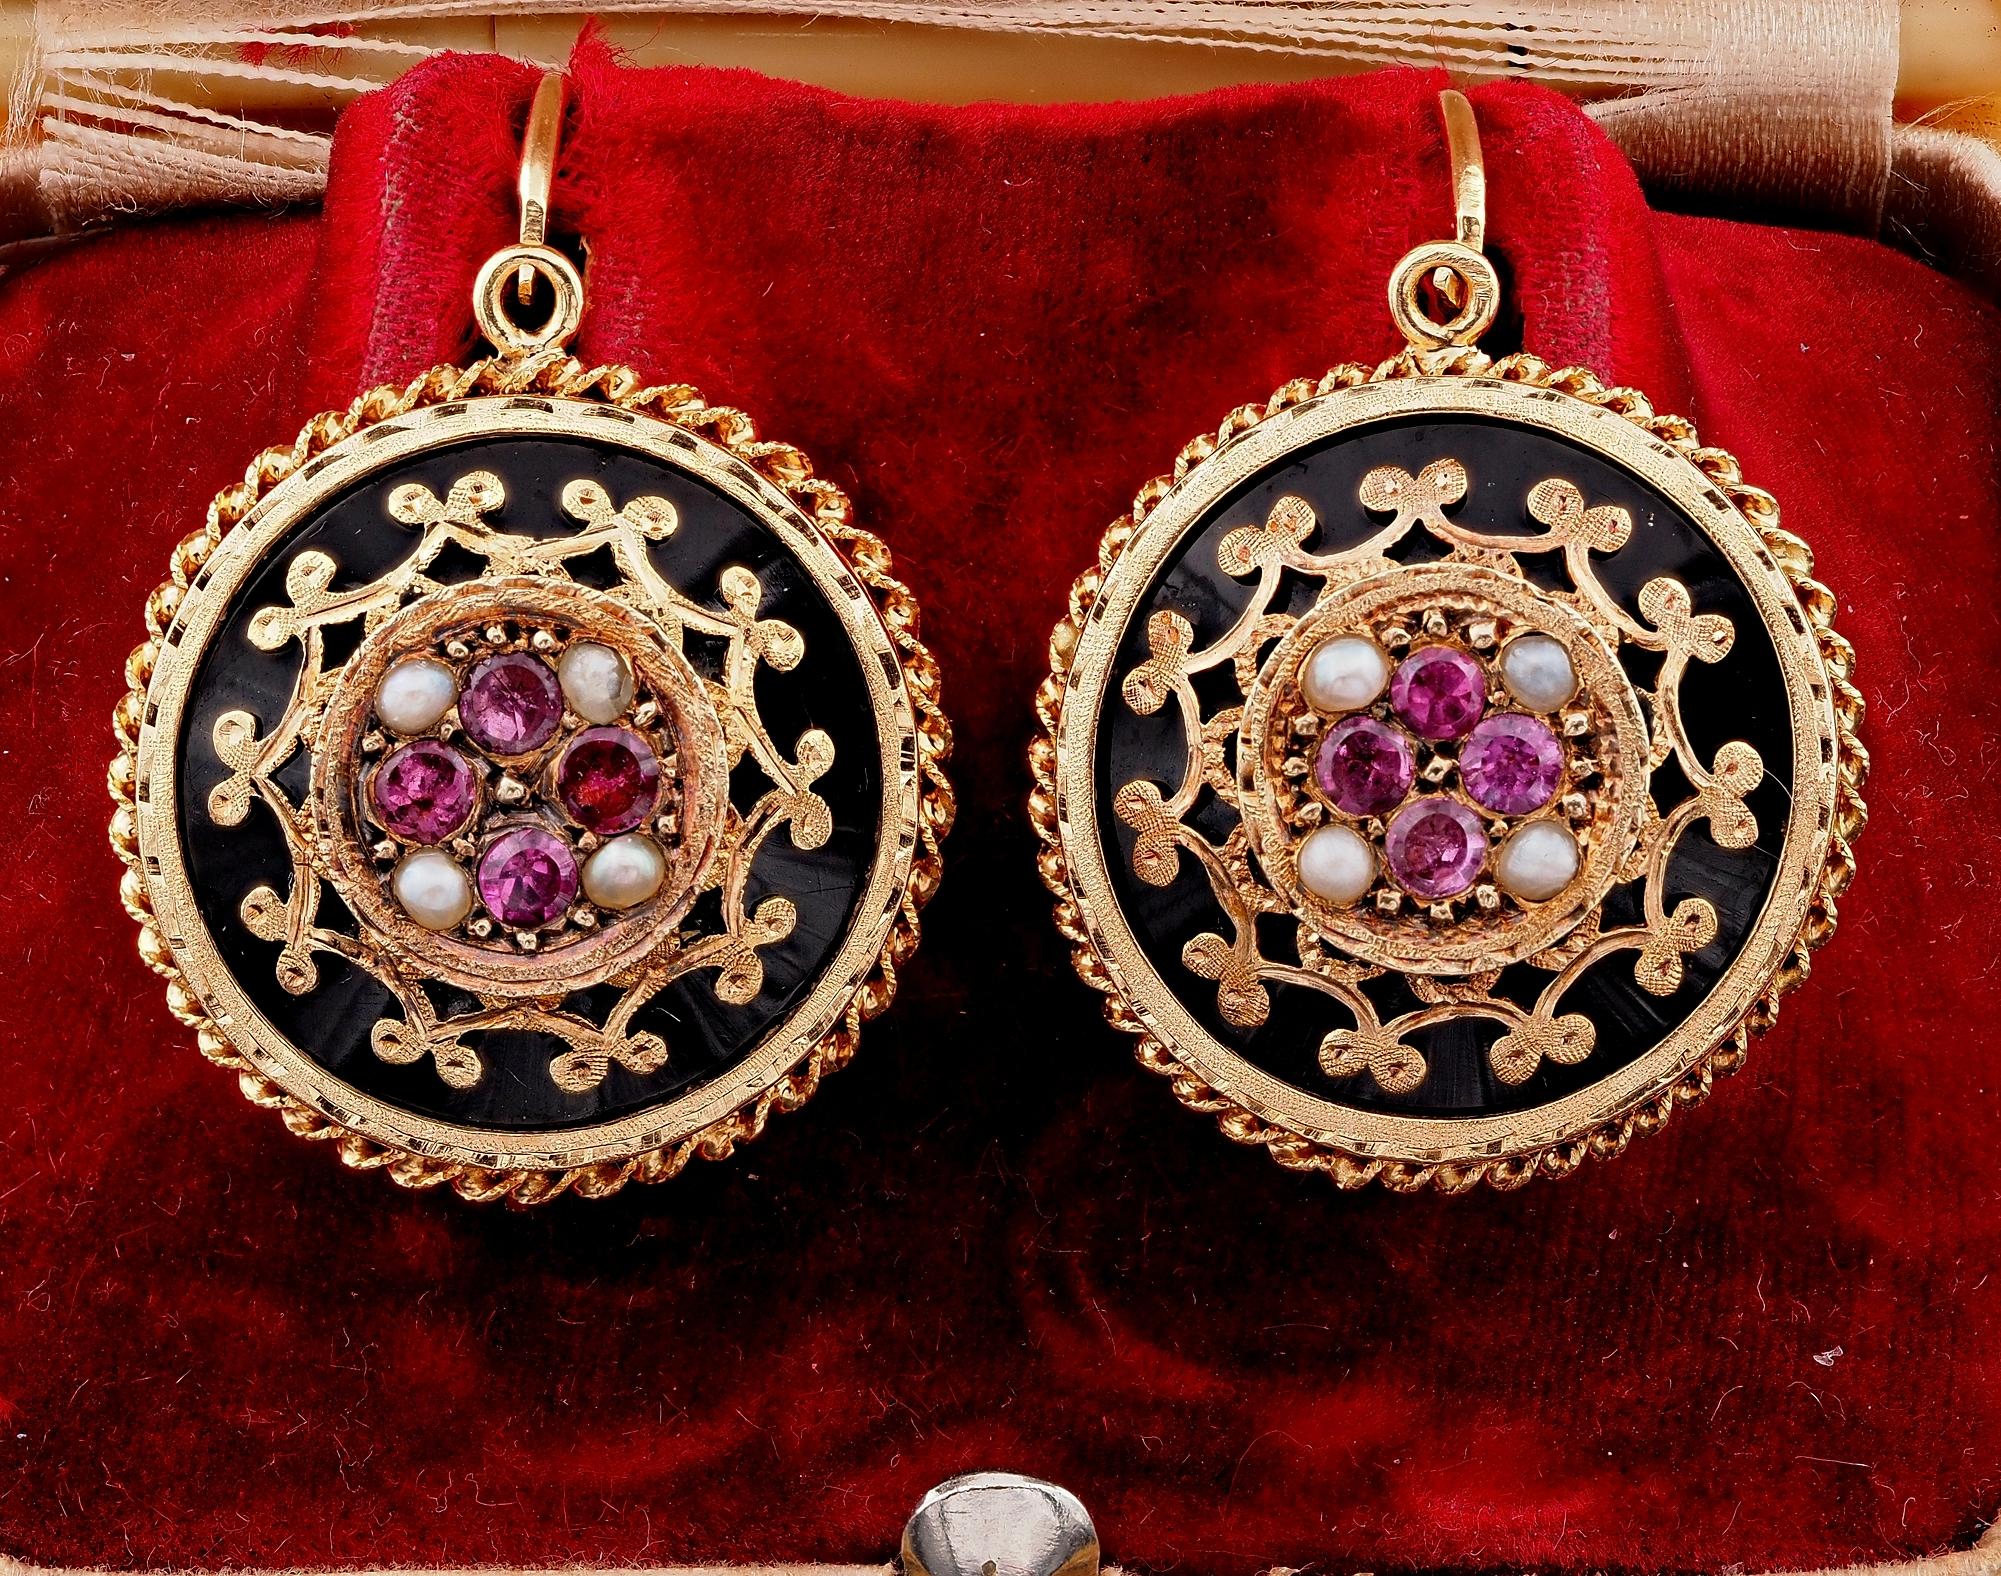 Diese schönen Ohrringe aus der viktorianischen Ära sind französischer Herkunft, 1880 ca
Mit französischen Punzen aus dieser Zeit
Exquisit handgefertigt von den früheren viktorianischen Meistern aus massivem 18 KT Gold
Einzigartige runde Platten aus